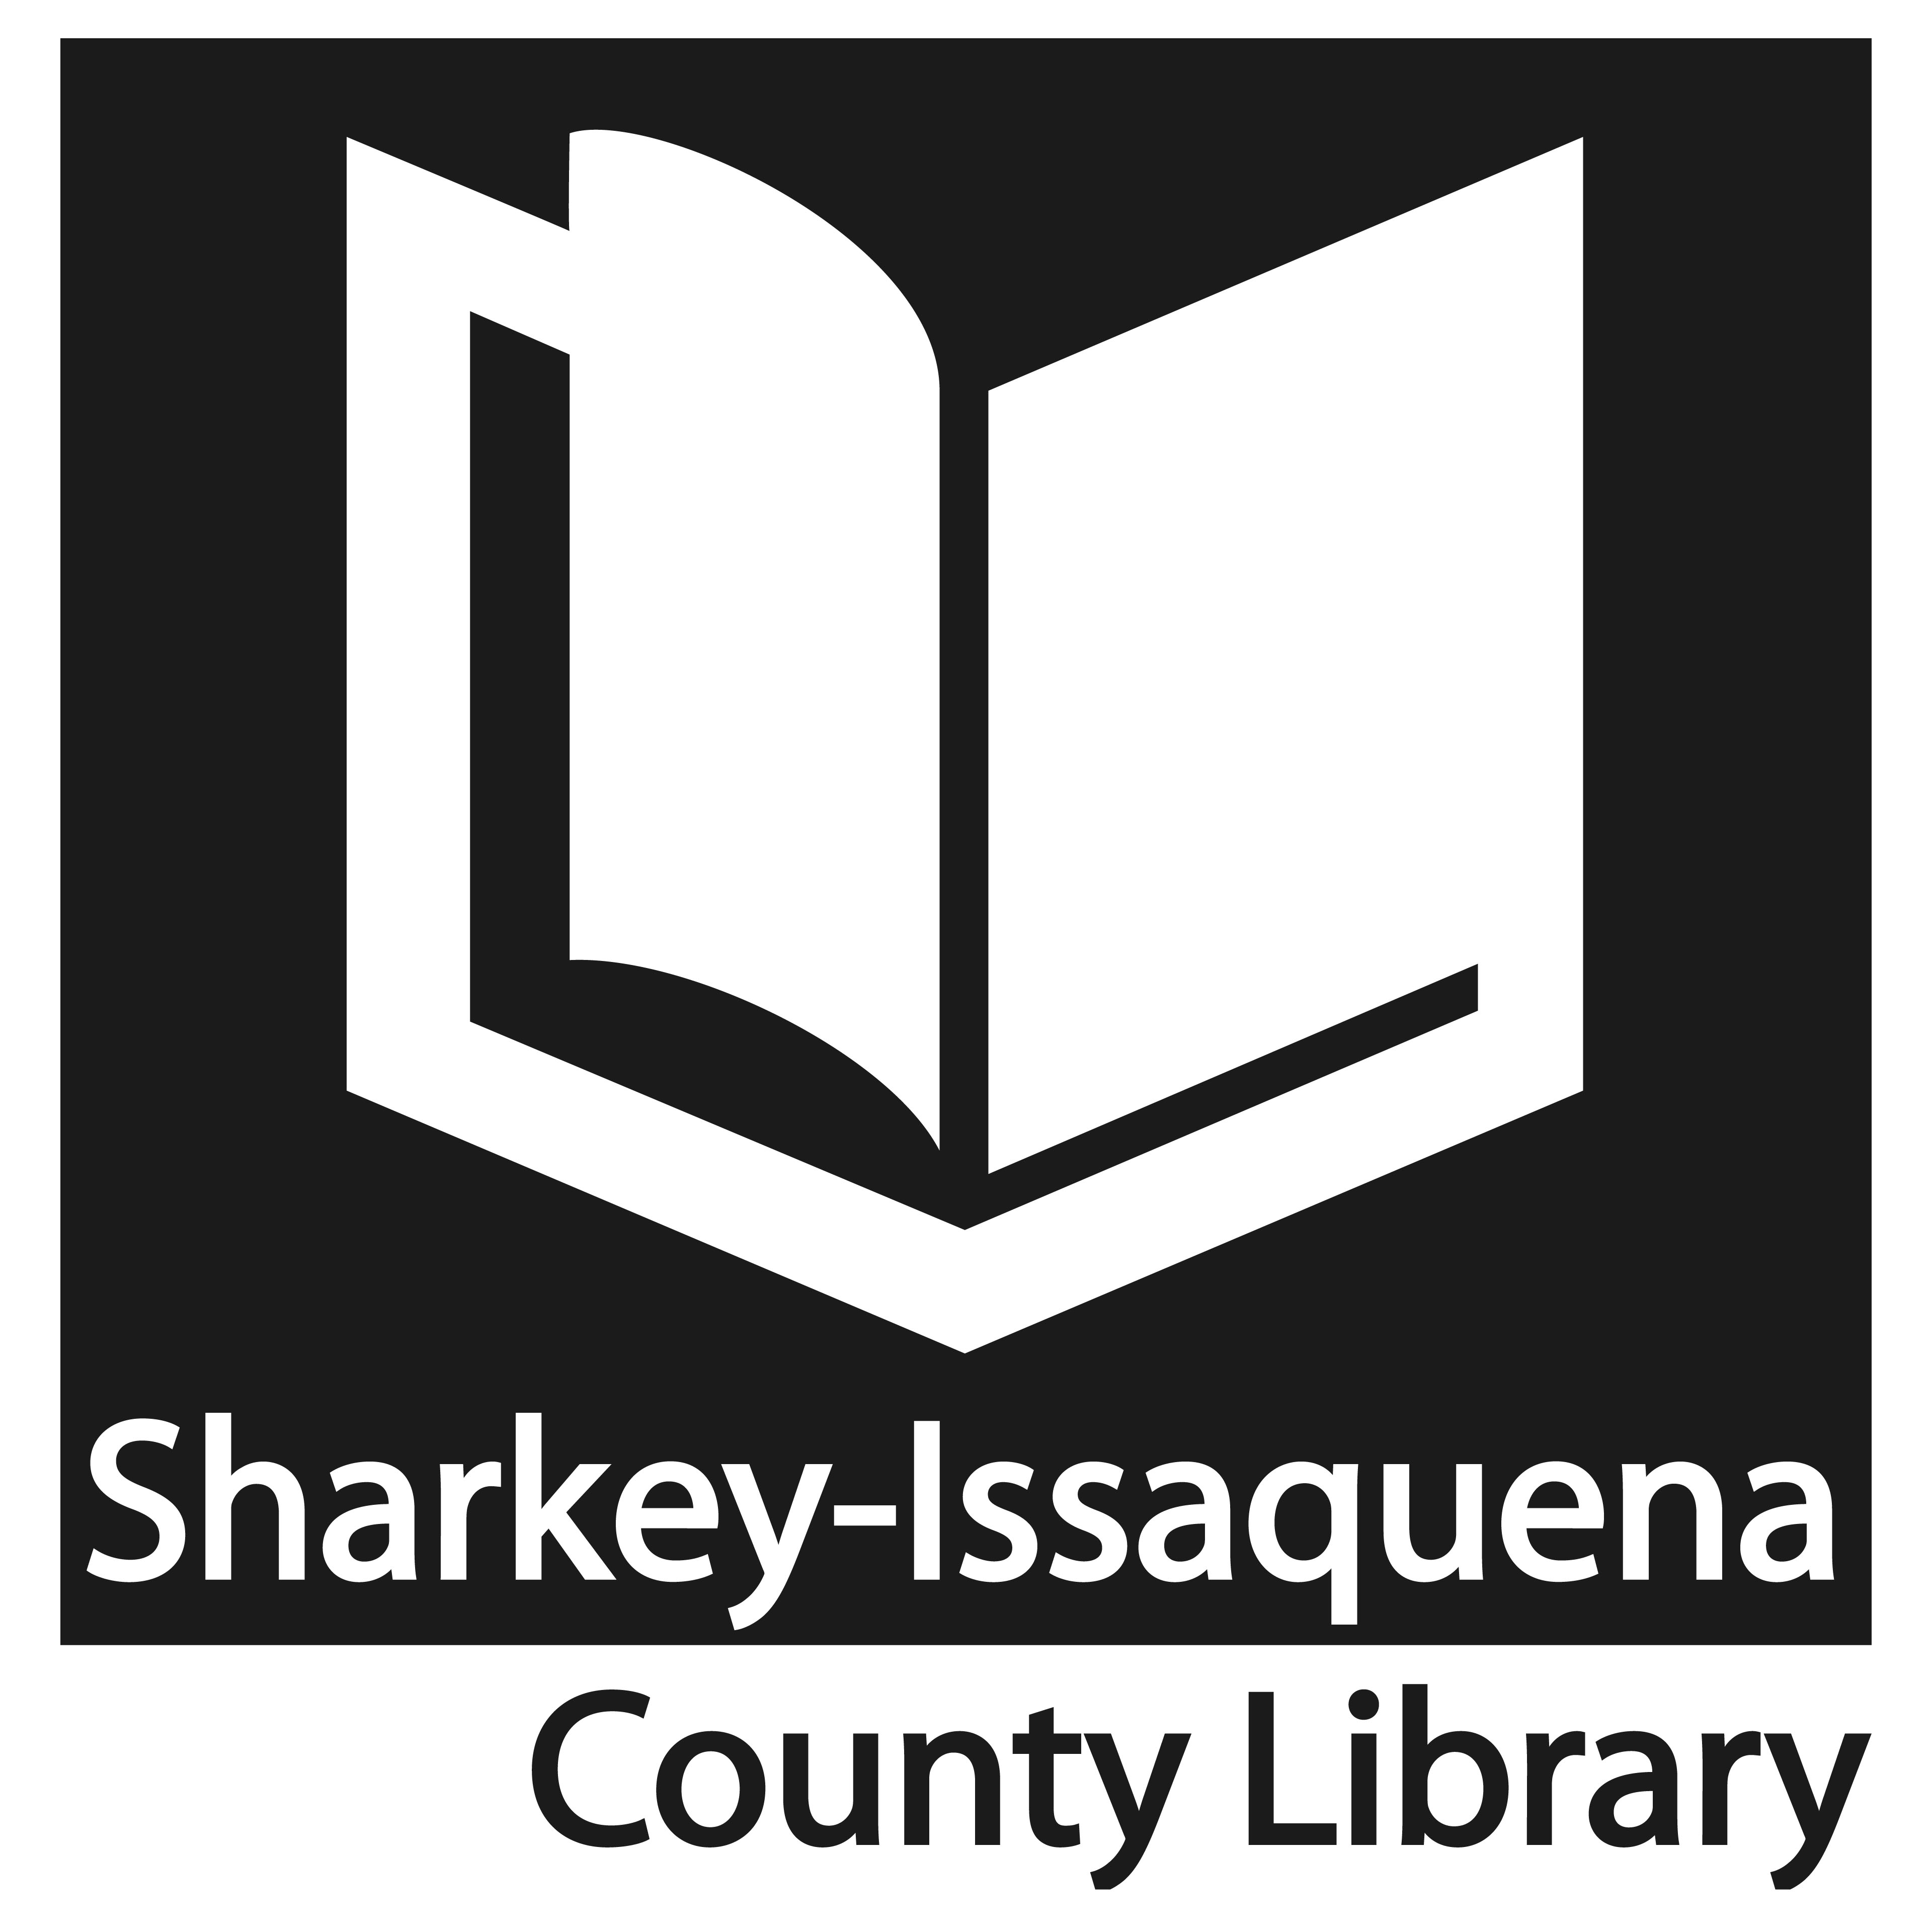 Sharkey-Issaquena County Library